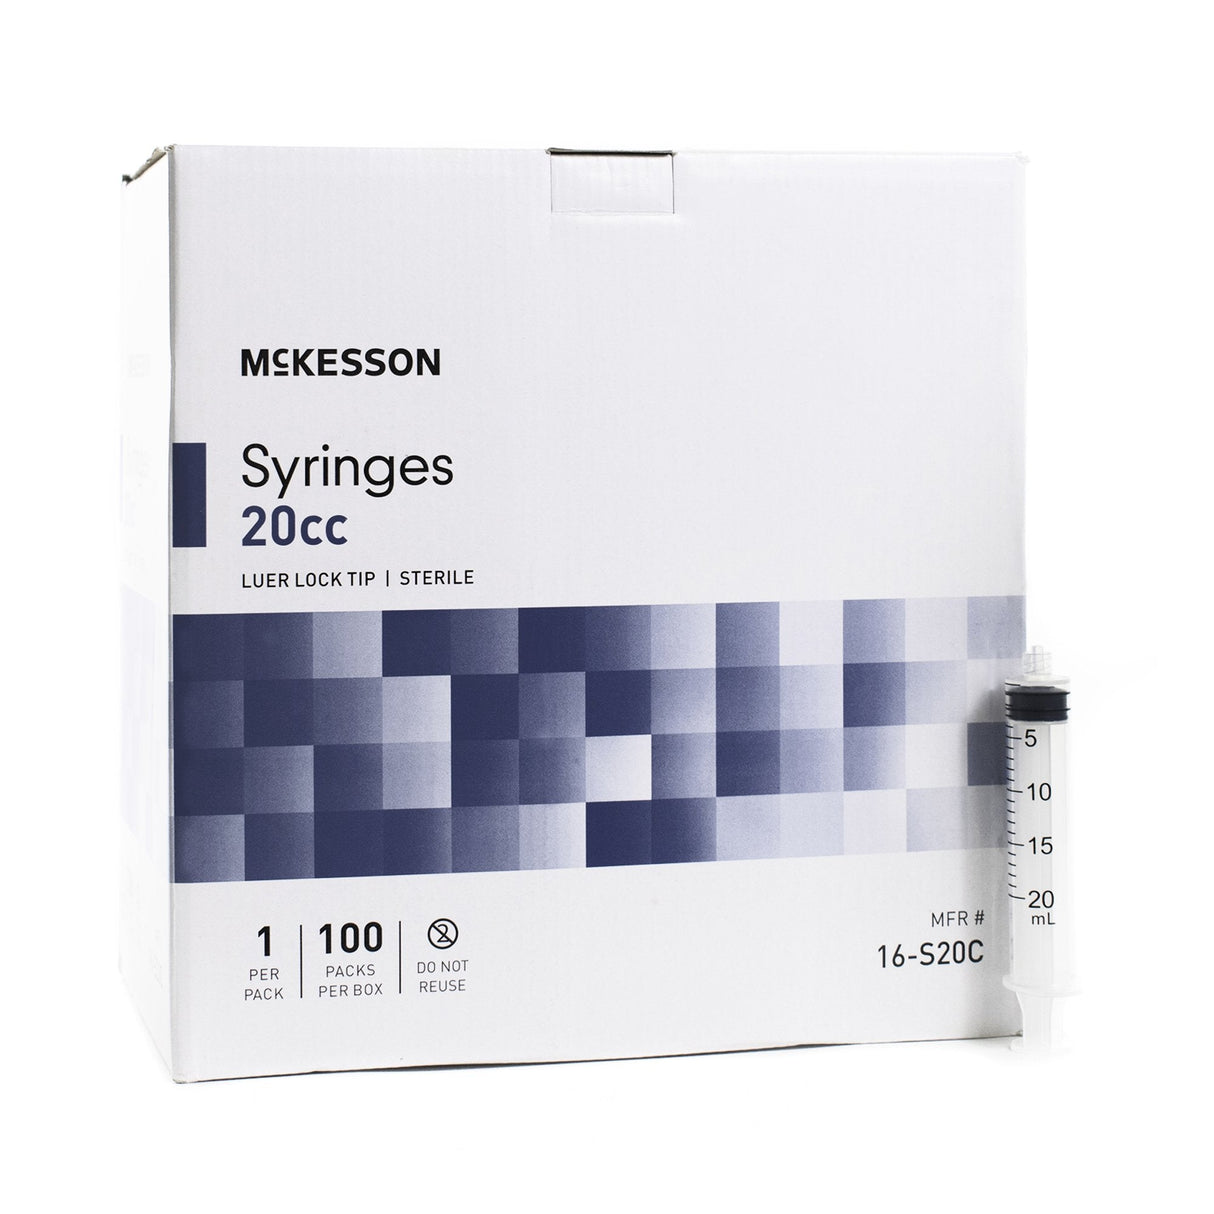 McKesson Luer Lock Syringe 20cc Sterile - 16-S20C